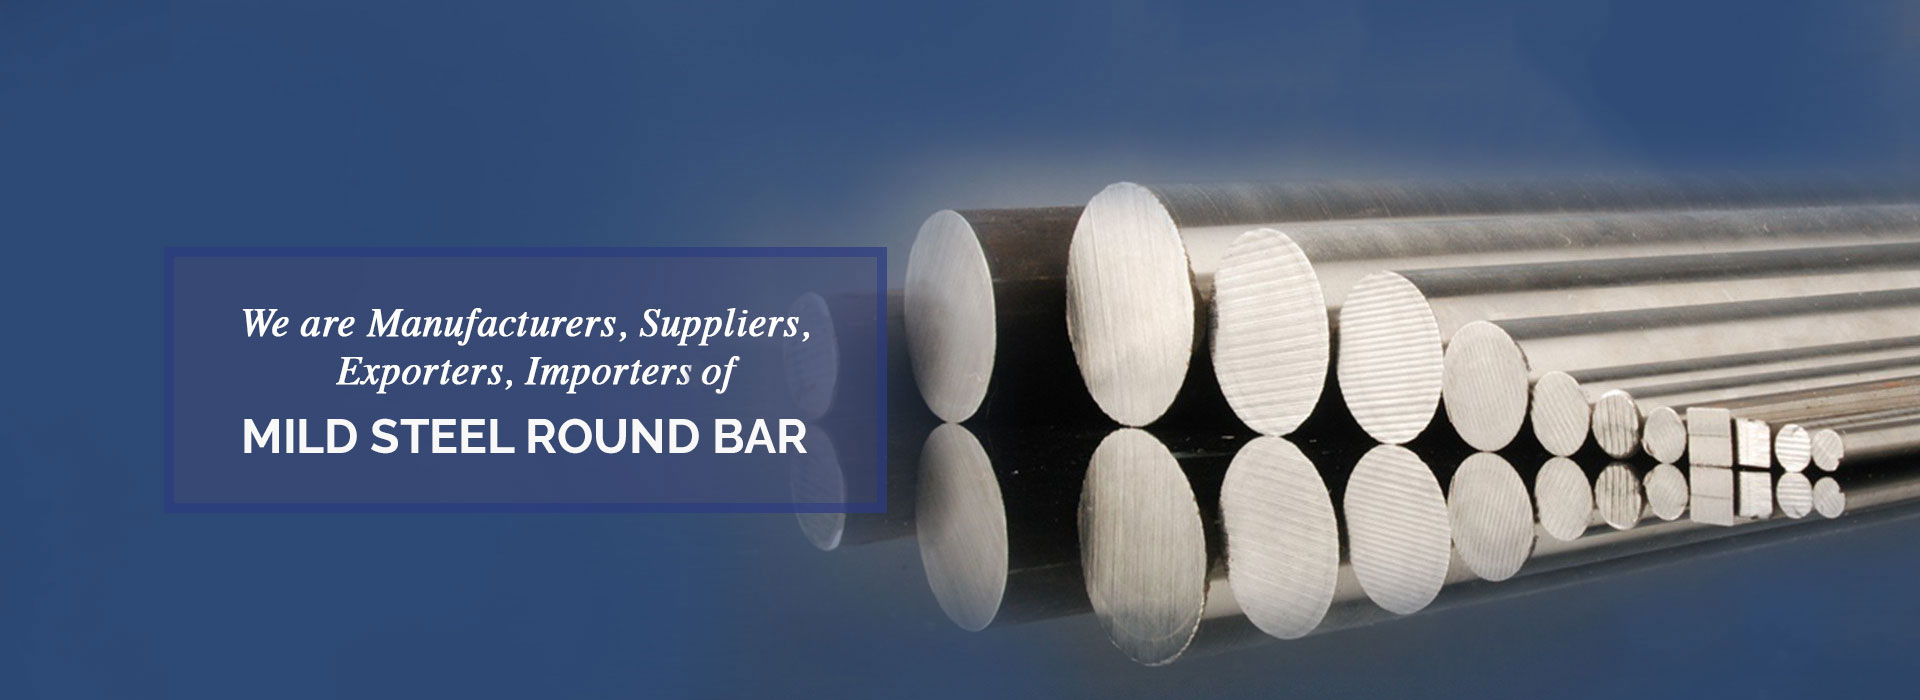 Mild Steel Round Bar Manufacturers in Turkey